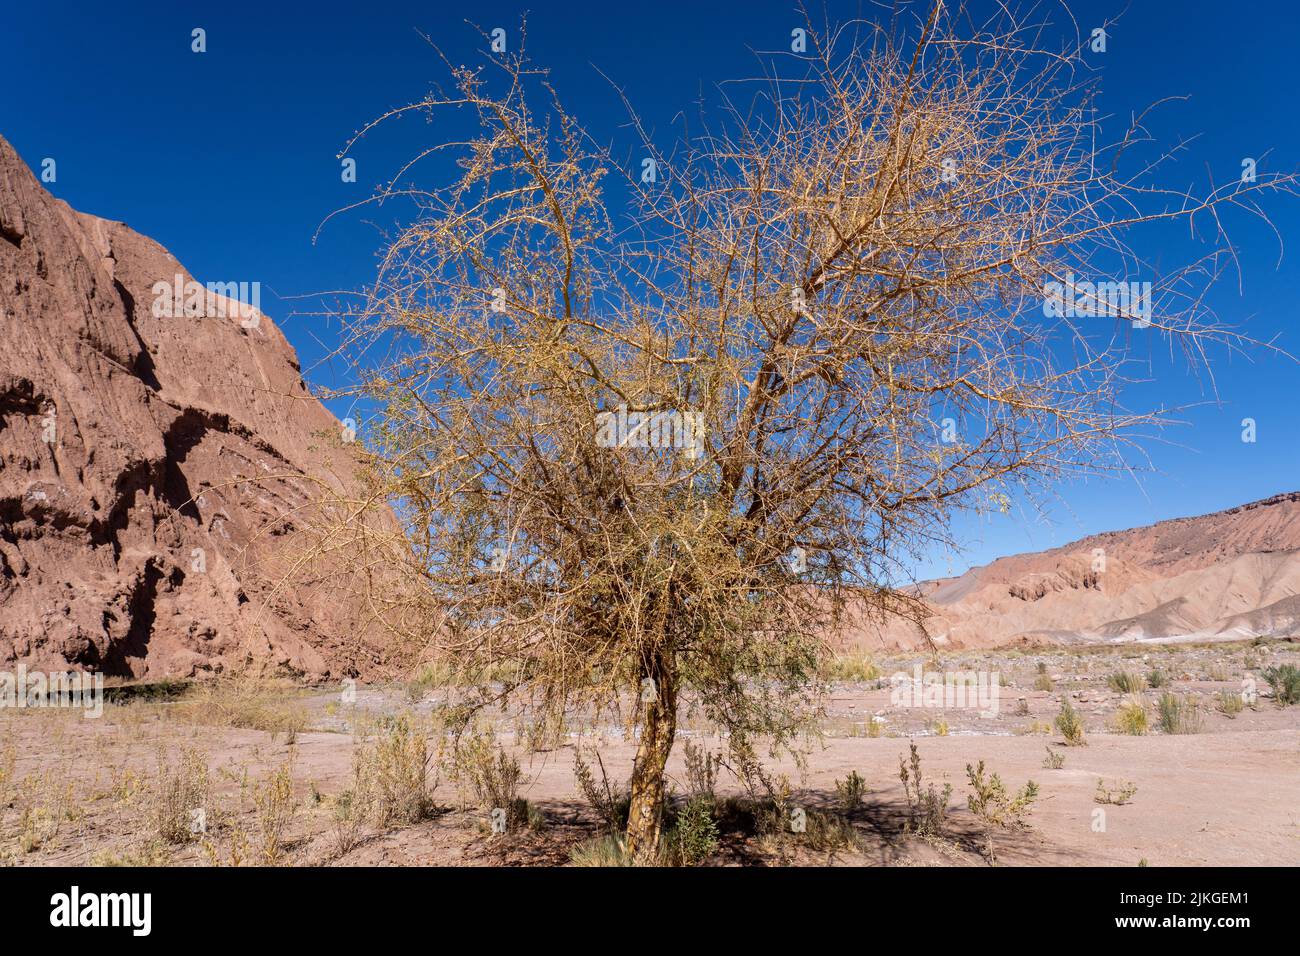 A Chañar or Chilean Palo Verde tree in the Catarpe Valley in the Atacama Desert near San Pedro de Atacama, Chile. Stock Photo